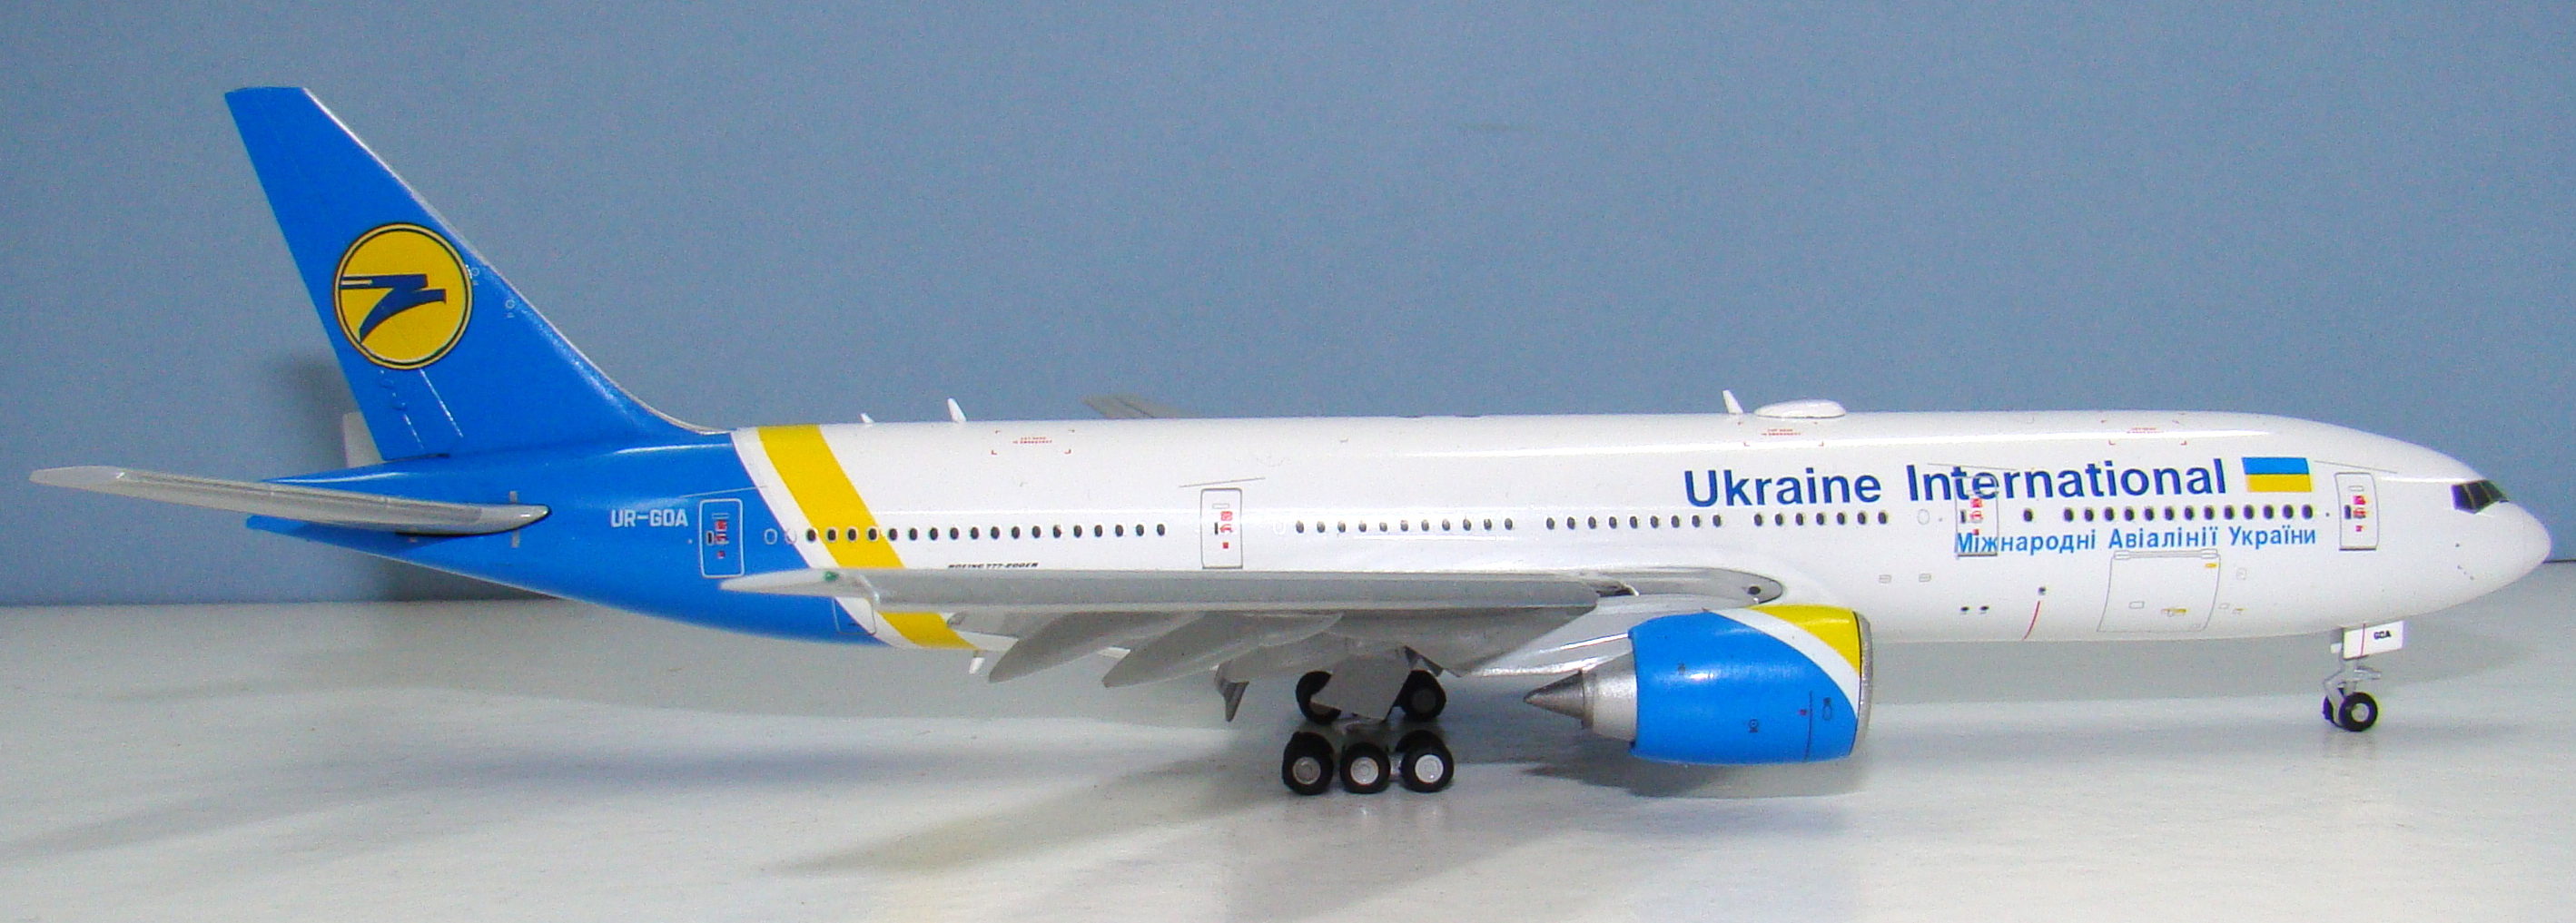 Tryzub Upgrade: Ukraine International Boeing 777-200ER UR-GOA by 